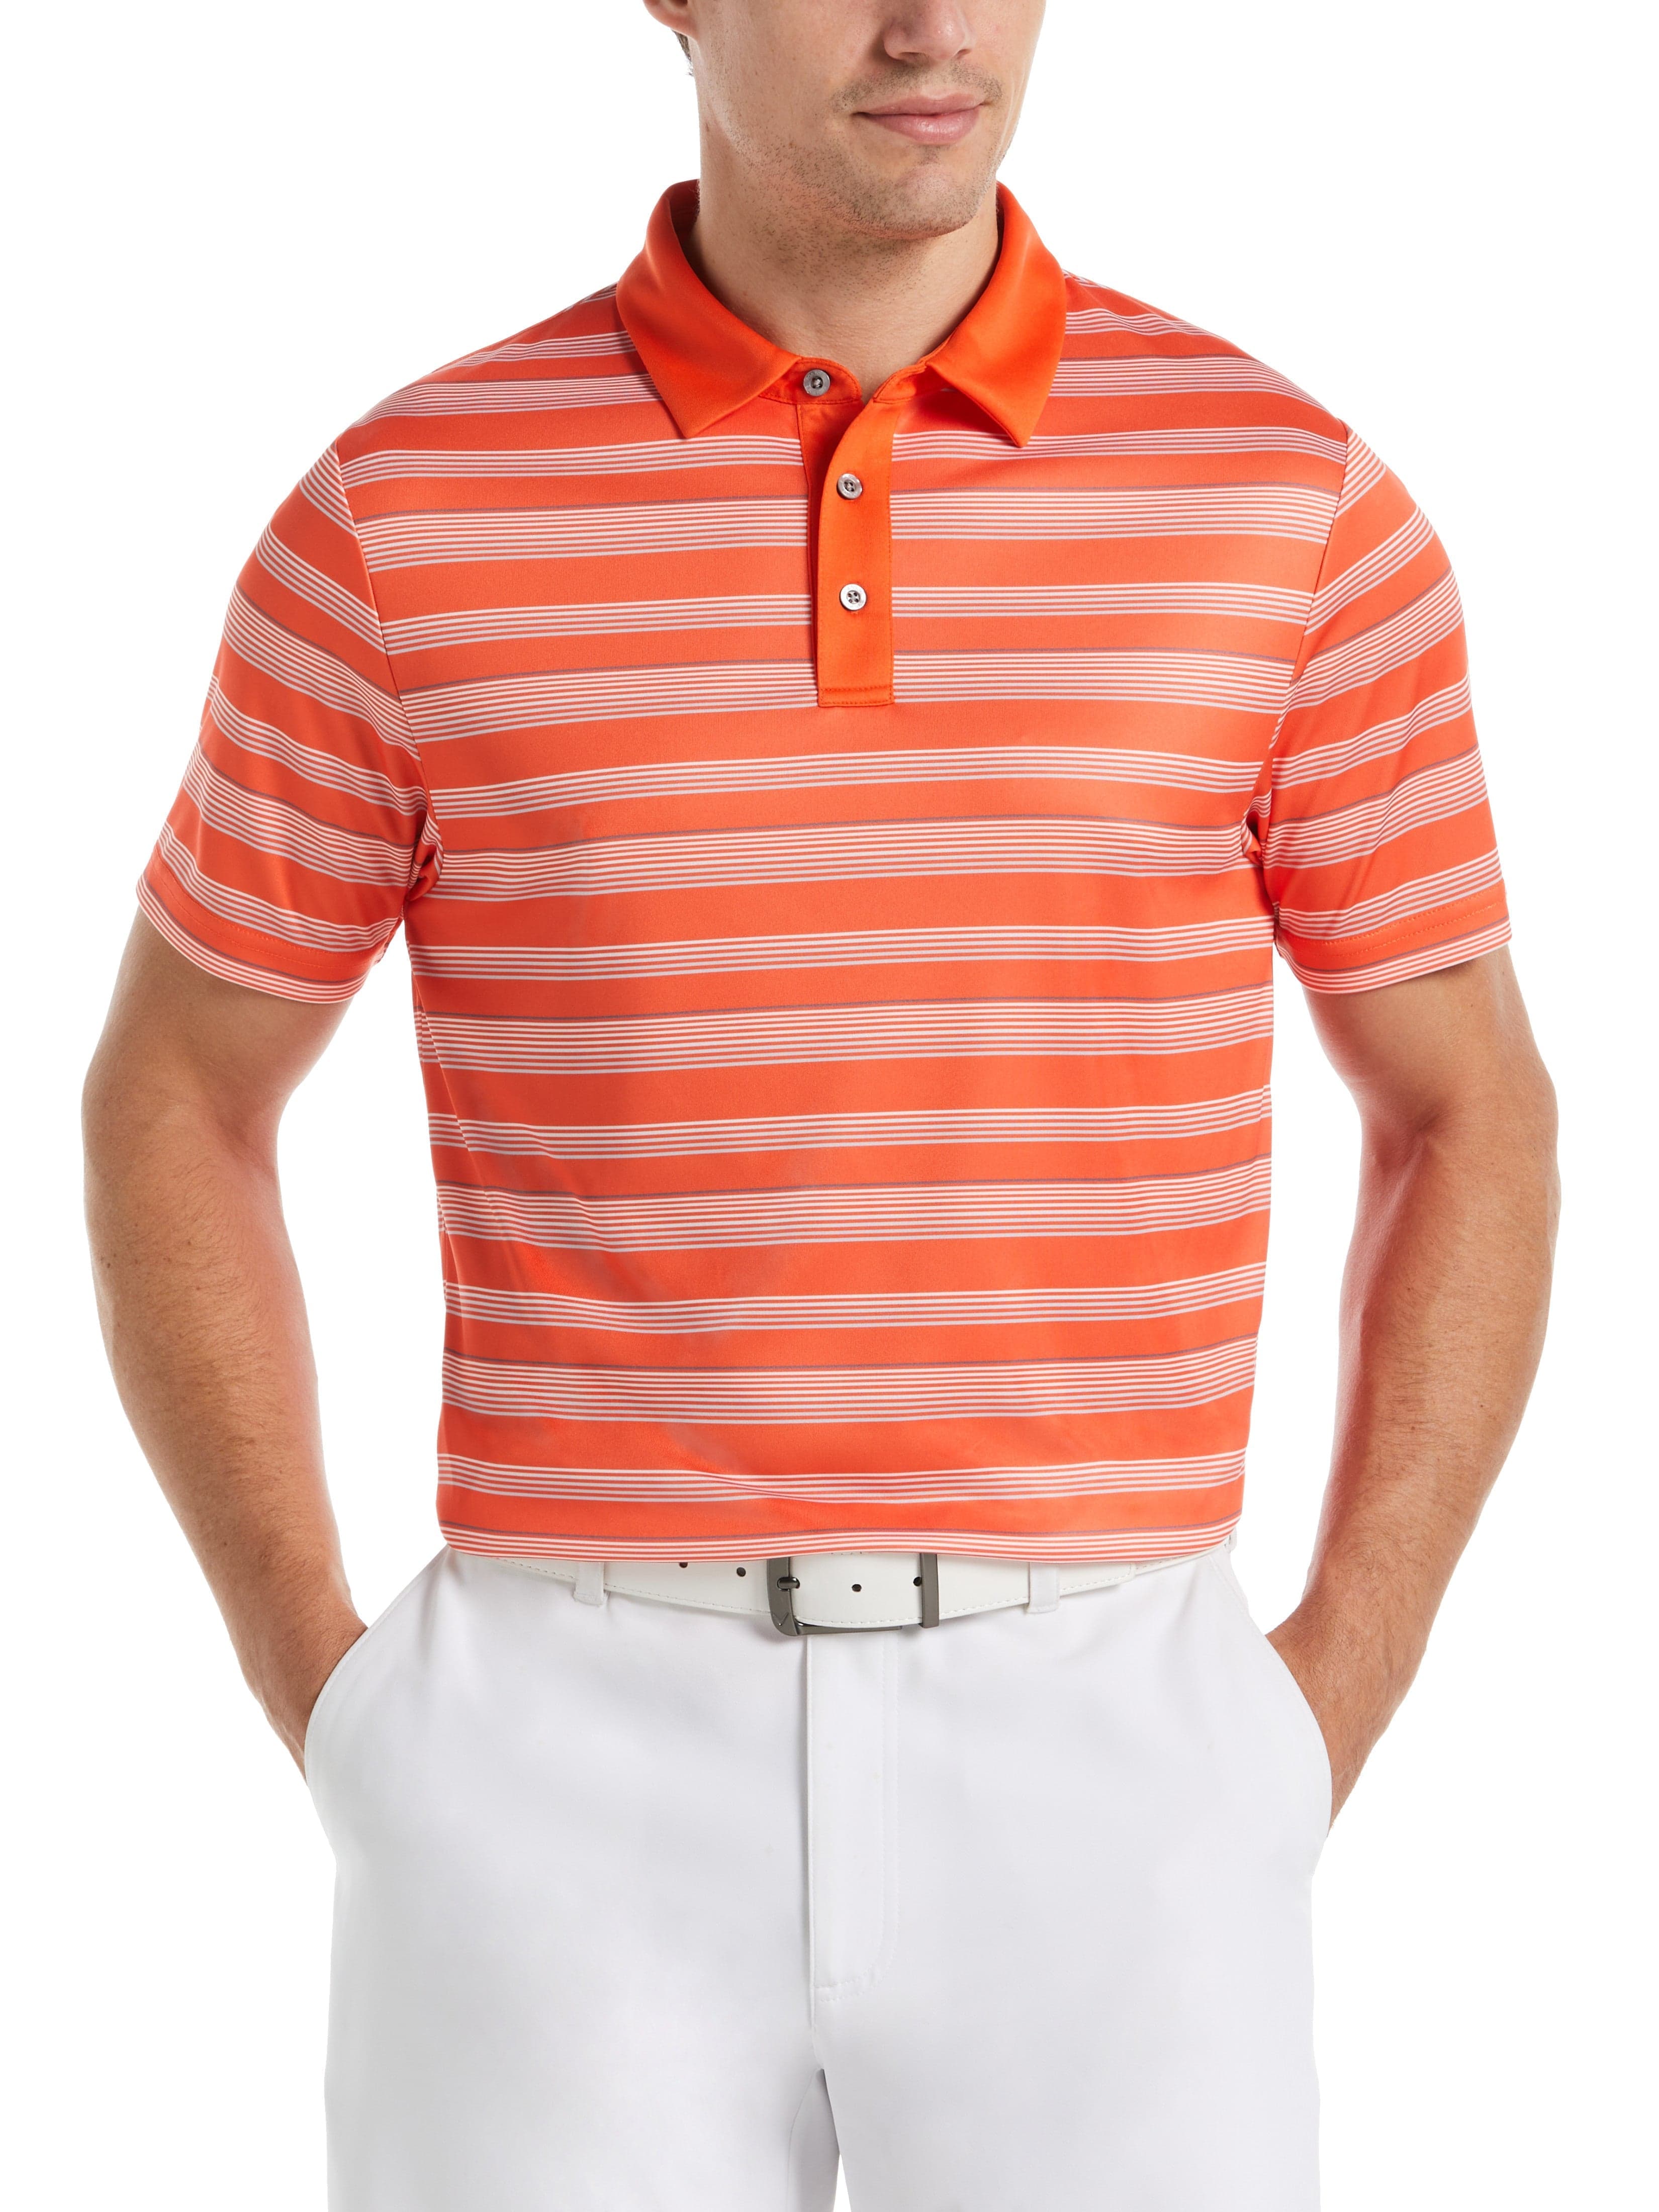 PGA TOUR Apparel Mens Allover Energy Stripe Golf Polo Shirt, Size 3XL, Vermillion Orange, 100% Polyester | Golf Apparel Shop